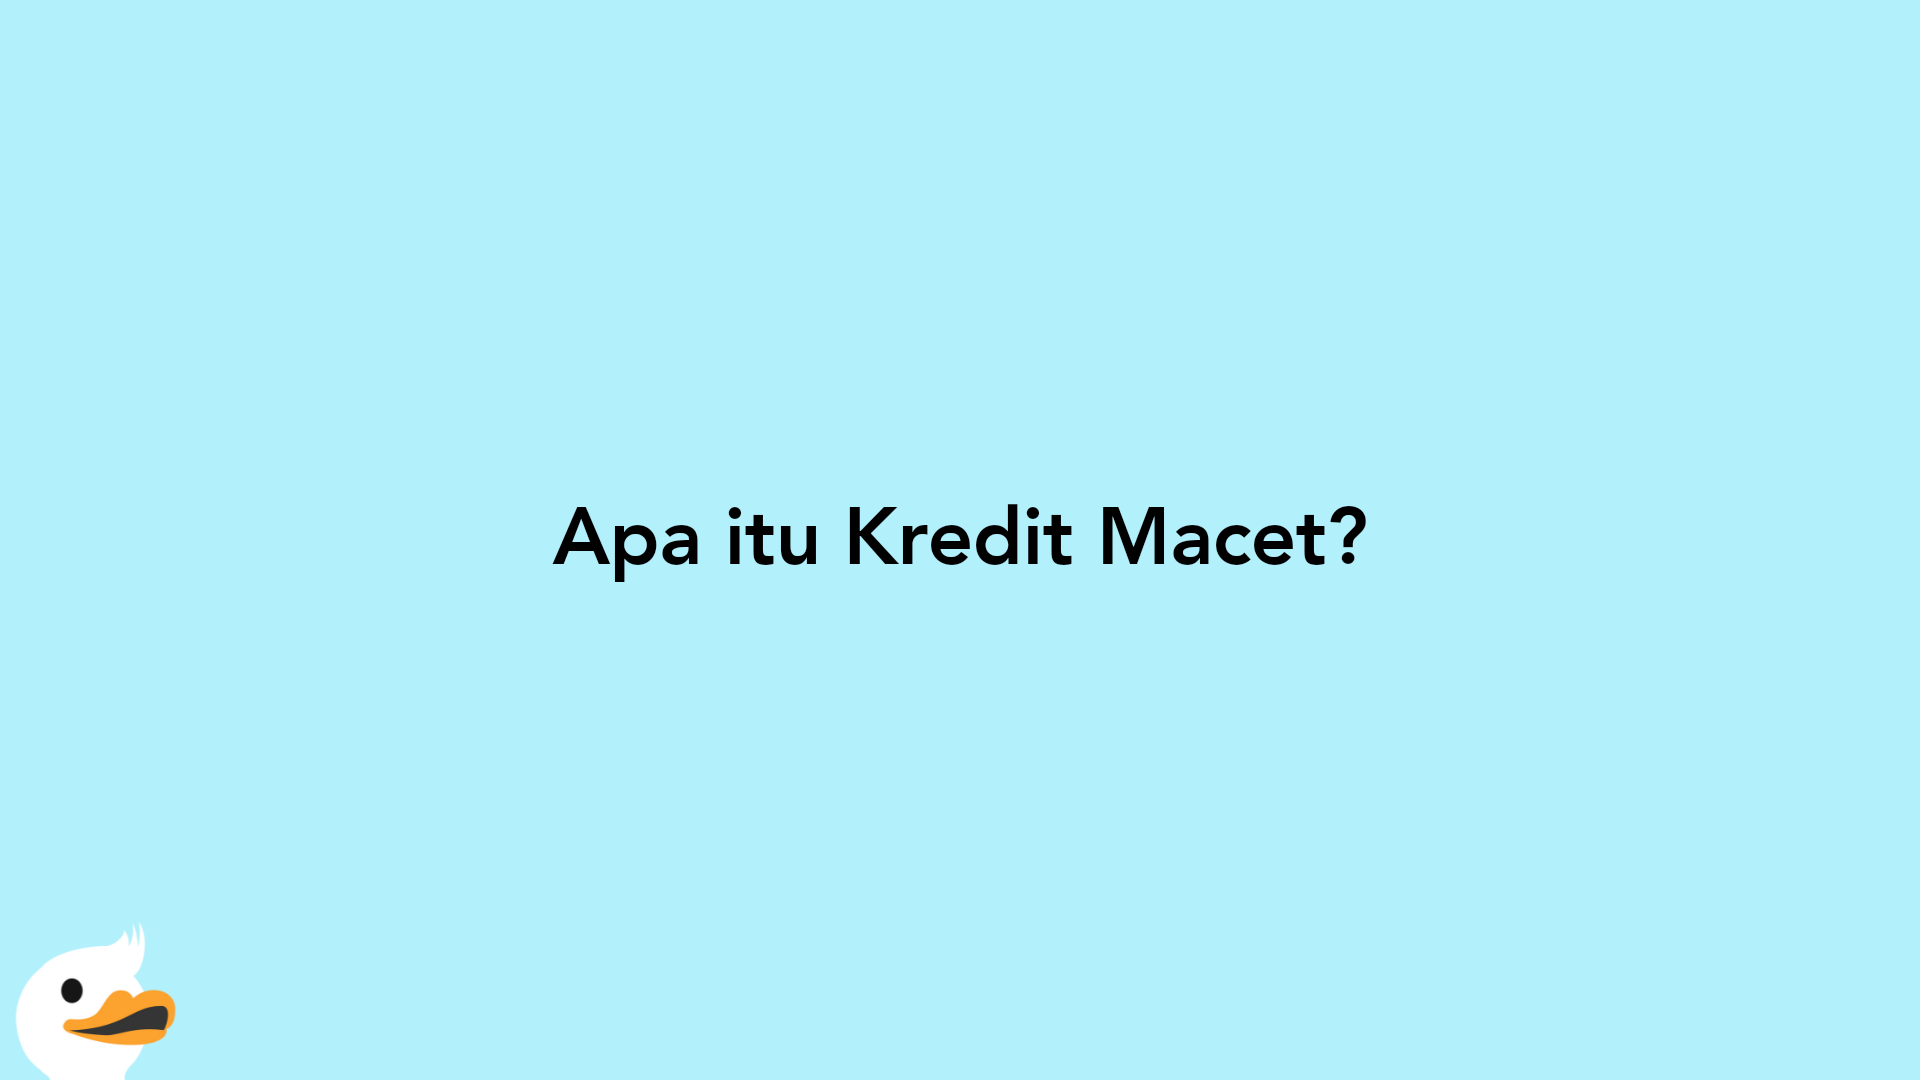 Apa itu Kredit Macet?